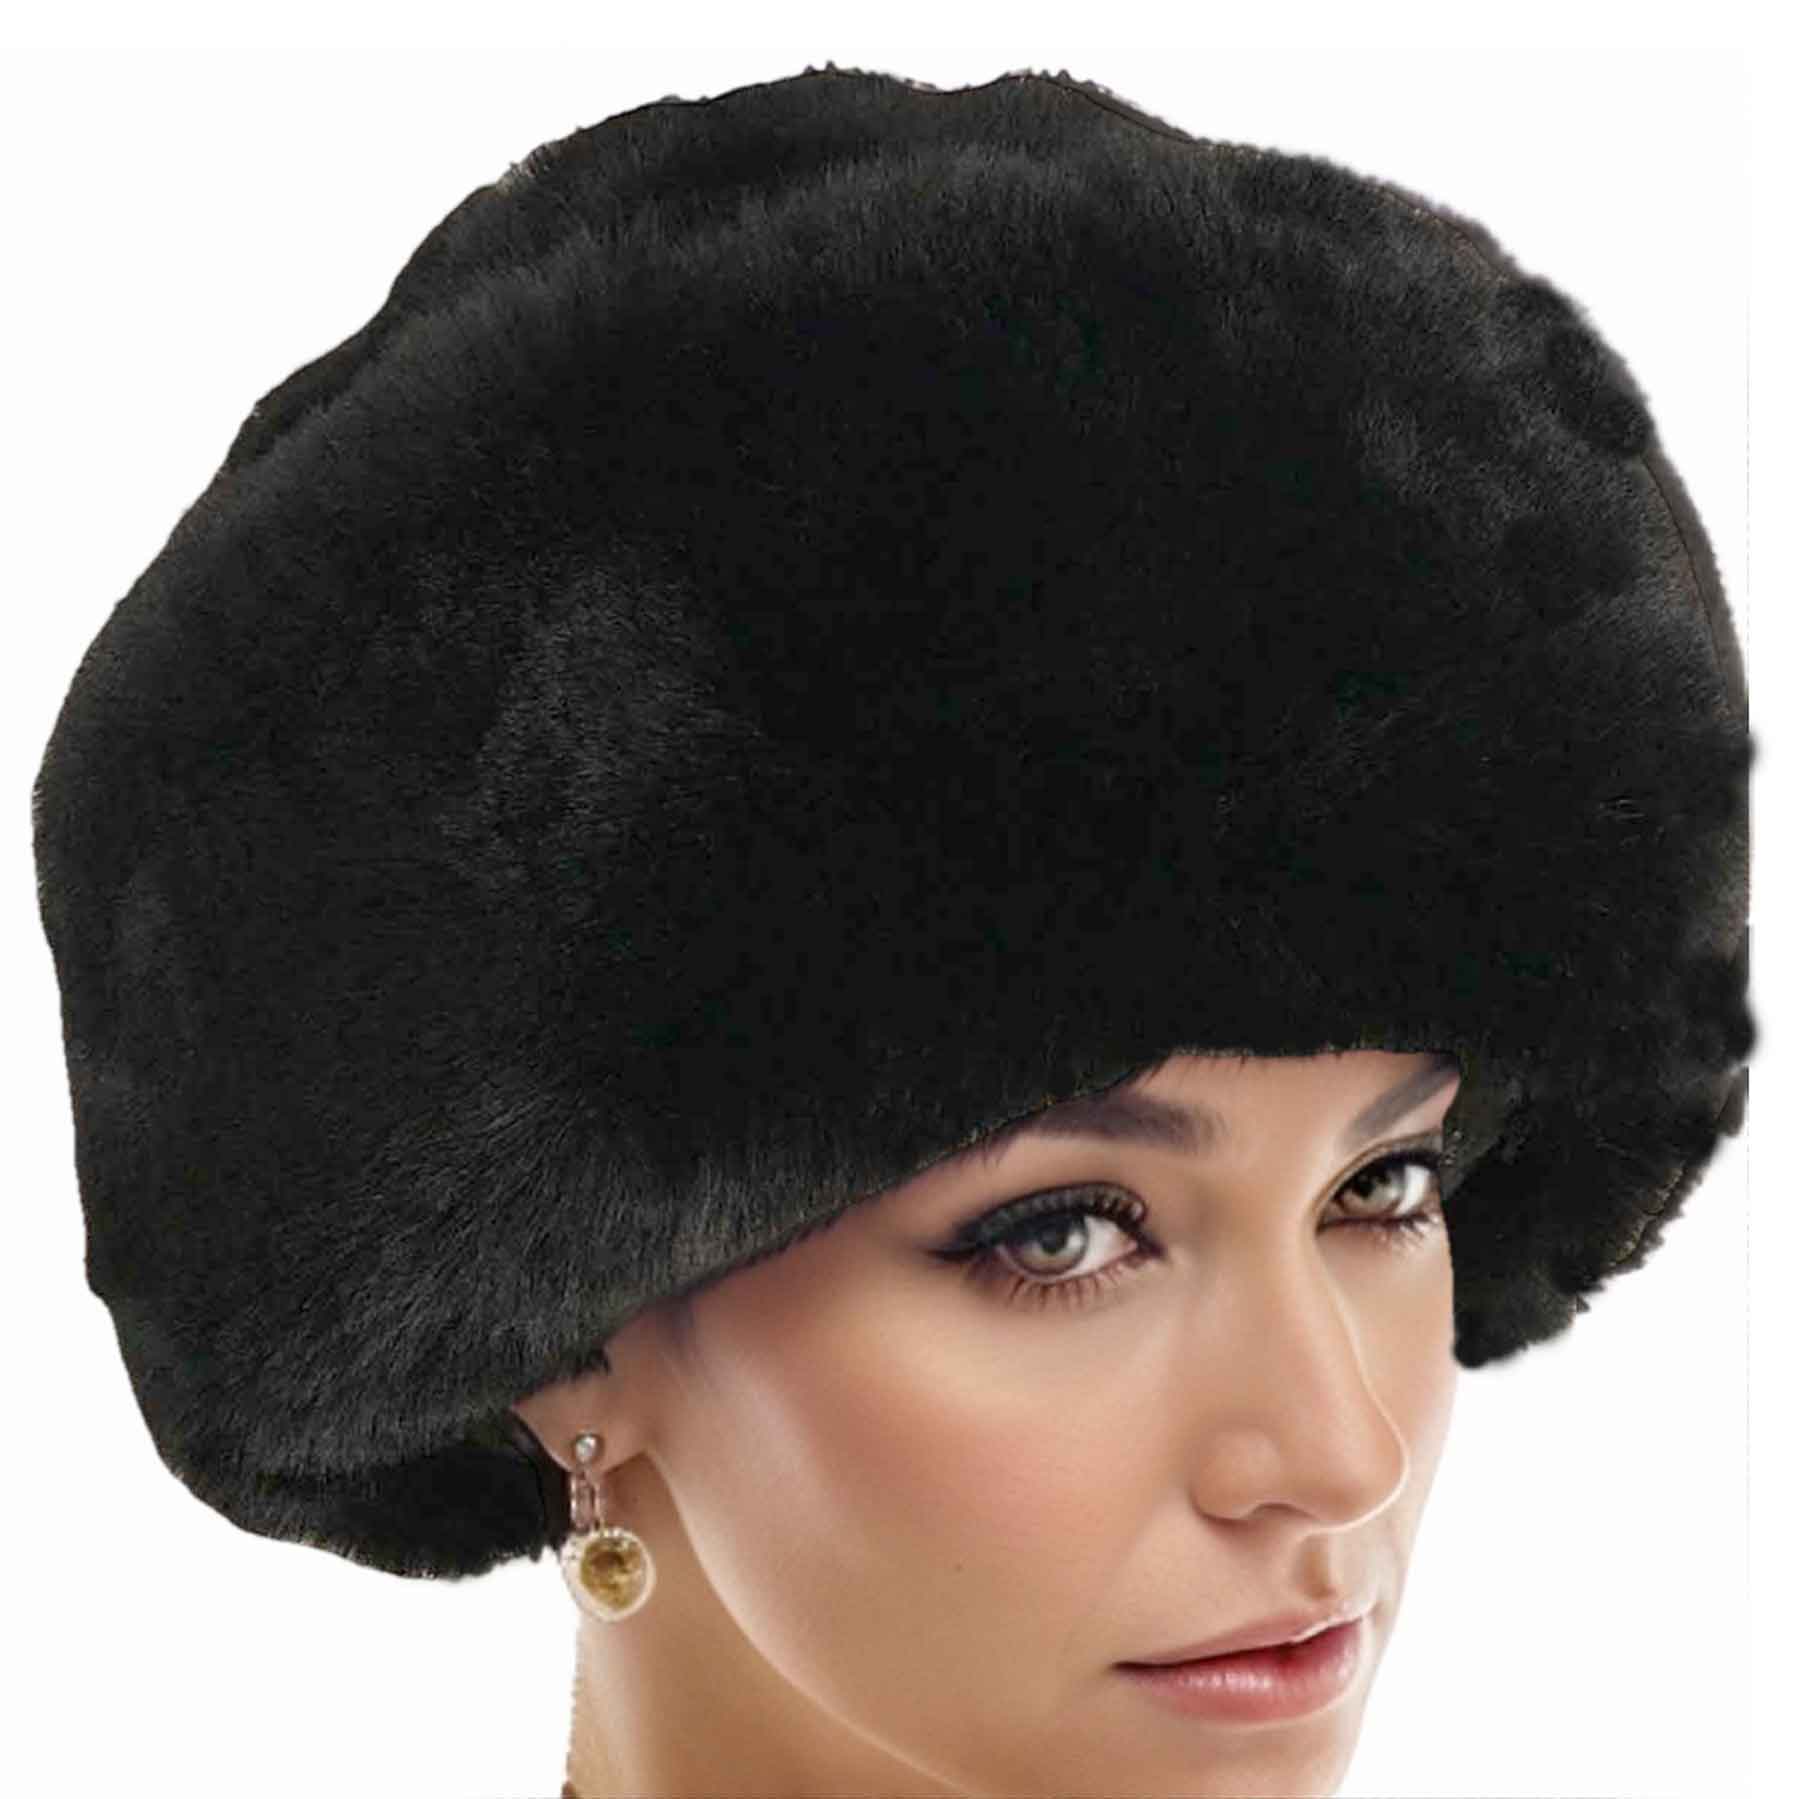 Black <br> Faux Rabbit Cossack Hat